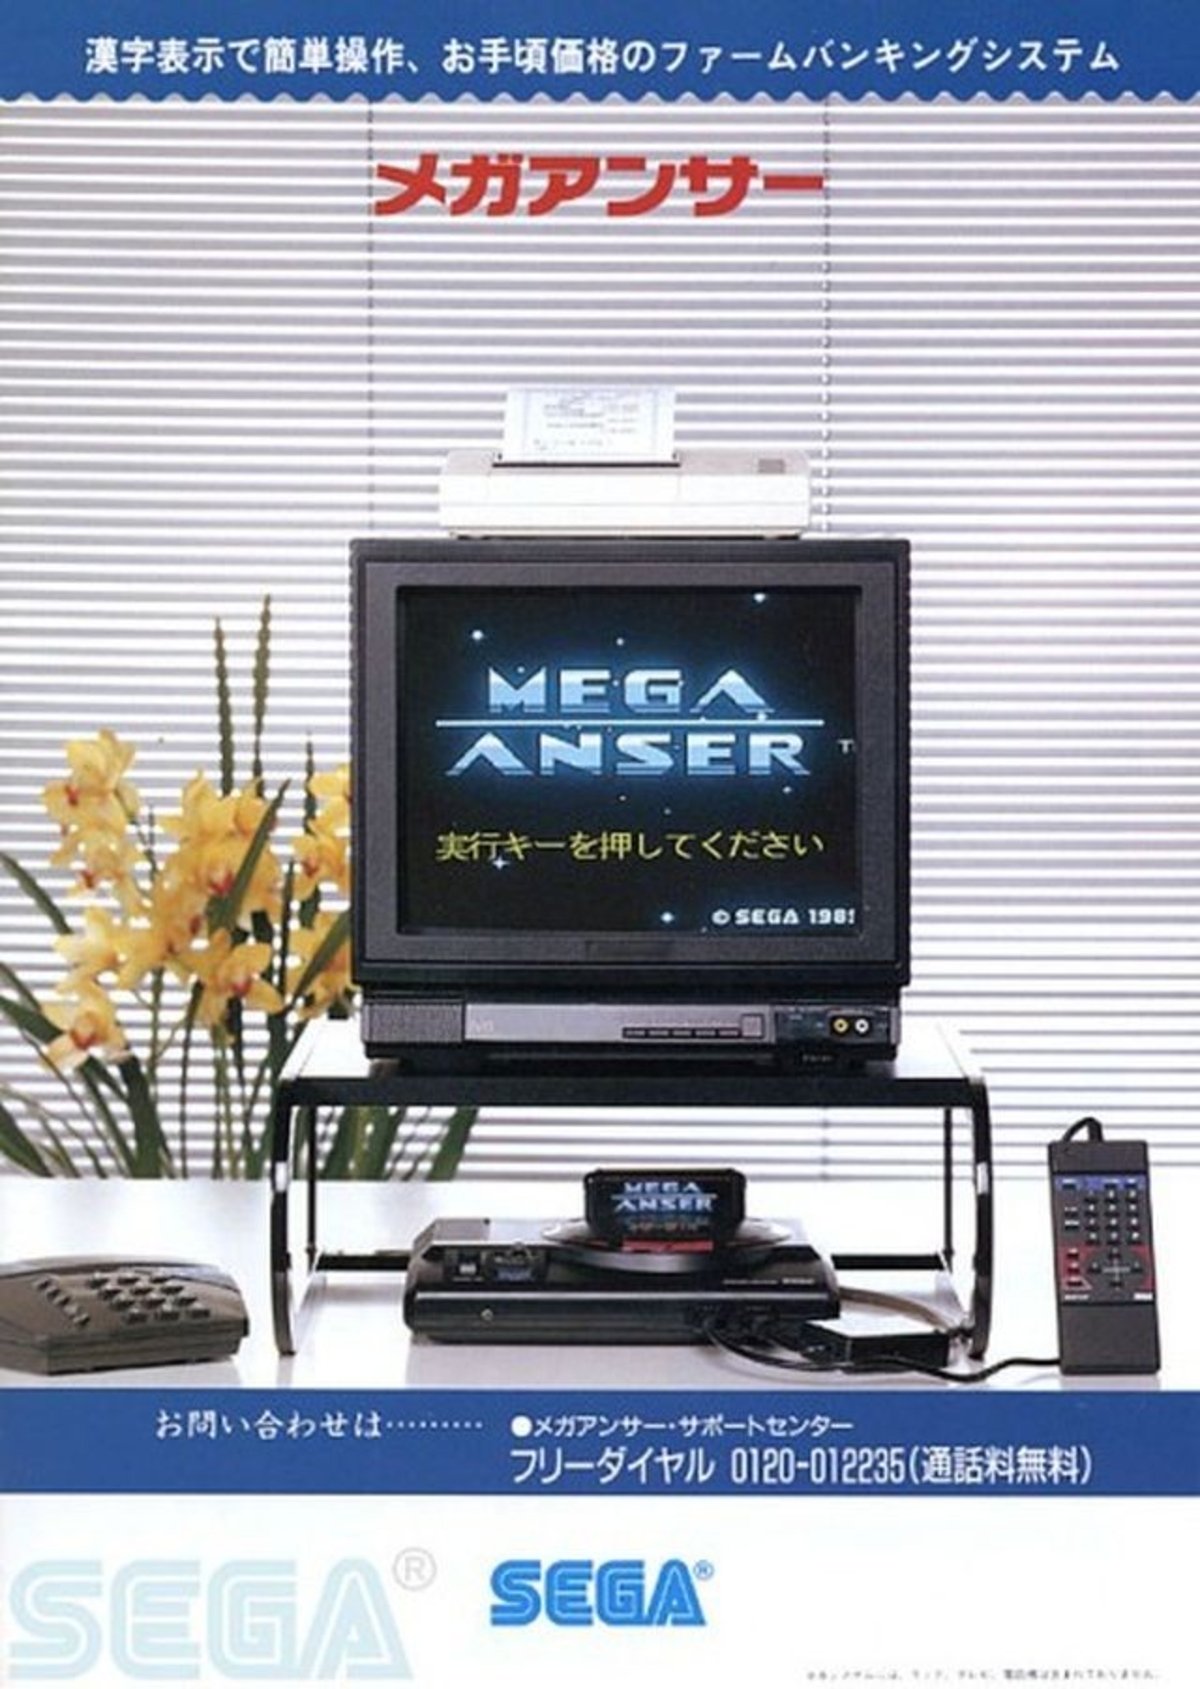 ¿SABÍAS QUE… Mega Drive tenía su propio contestador automático?